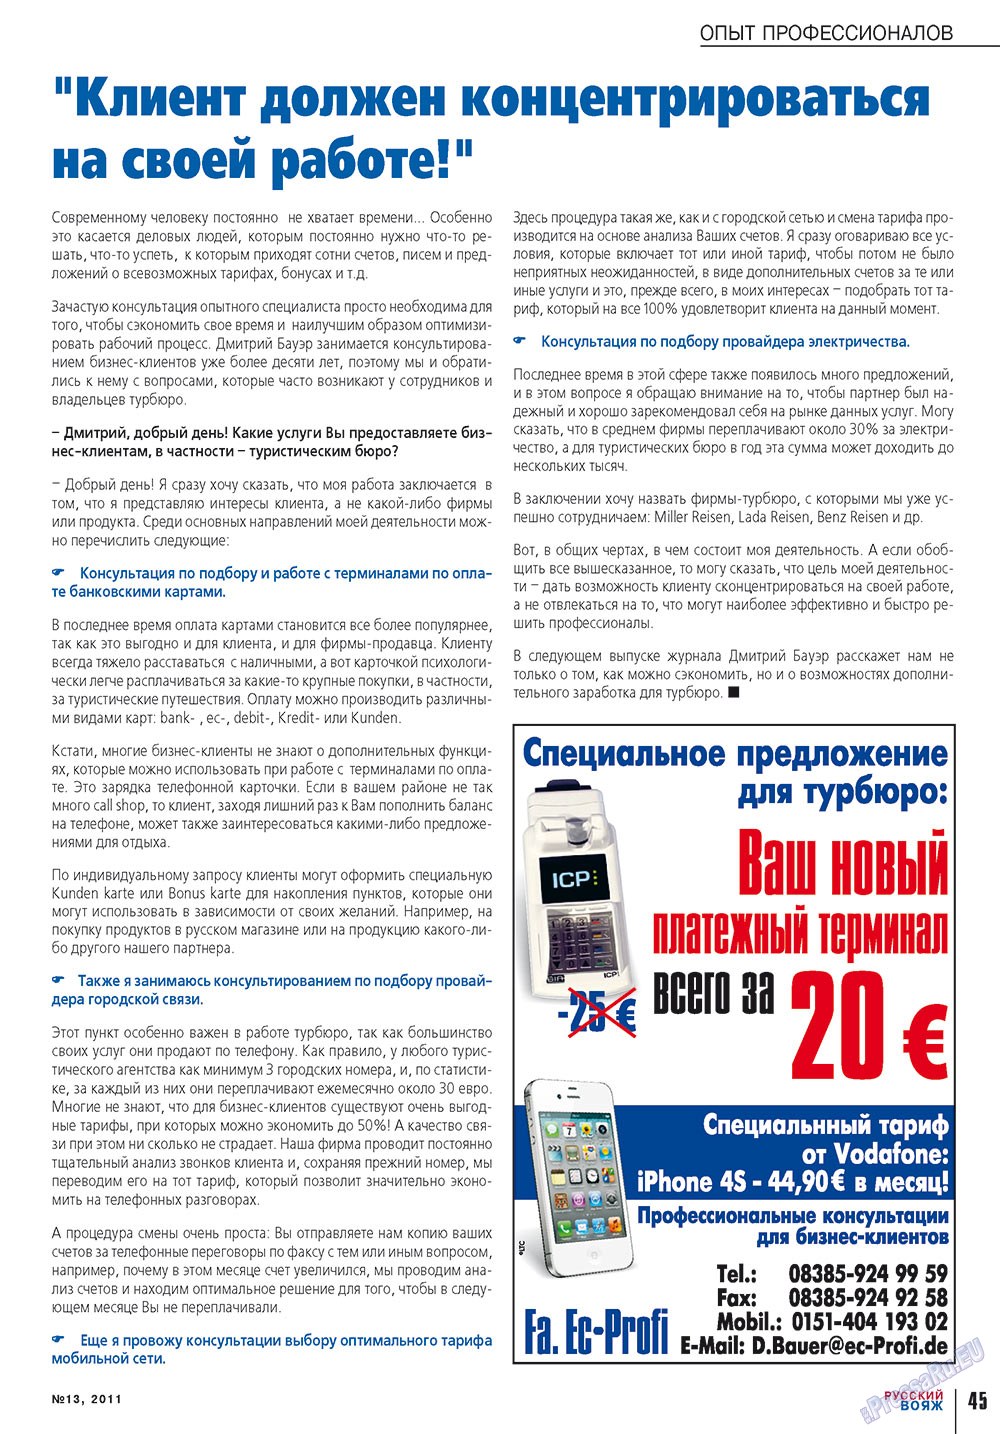 Русский вояж, журнал. 2011 №13 стр.45